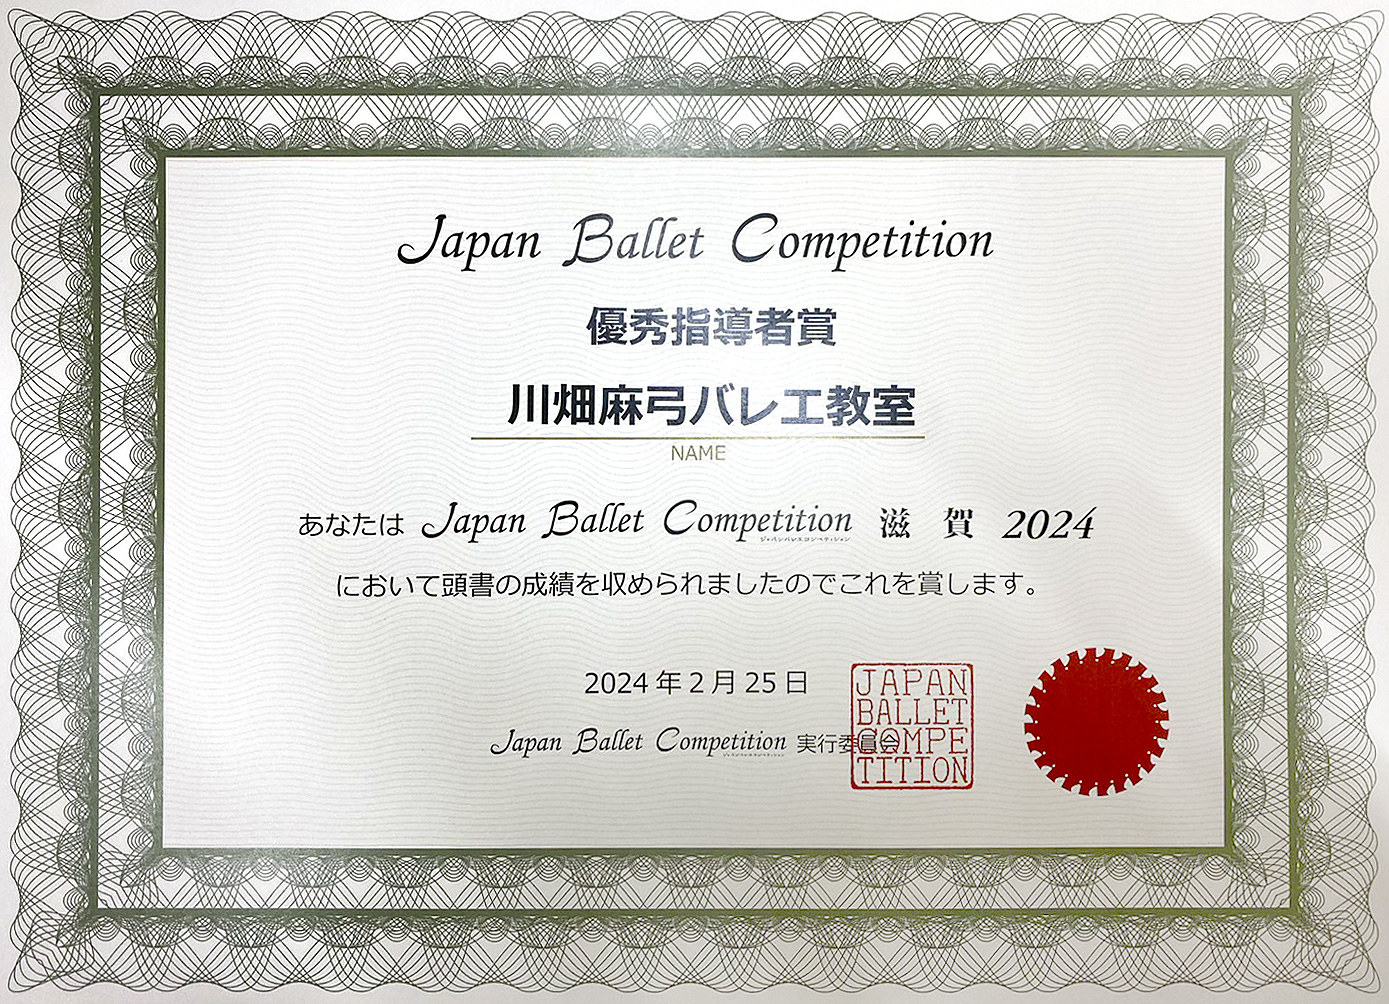 Japan Ballet Competition 滋賀 2024 優秀指導者賞